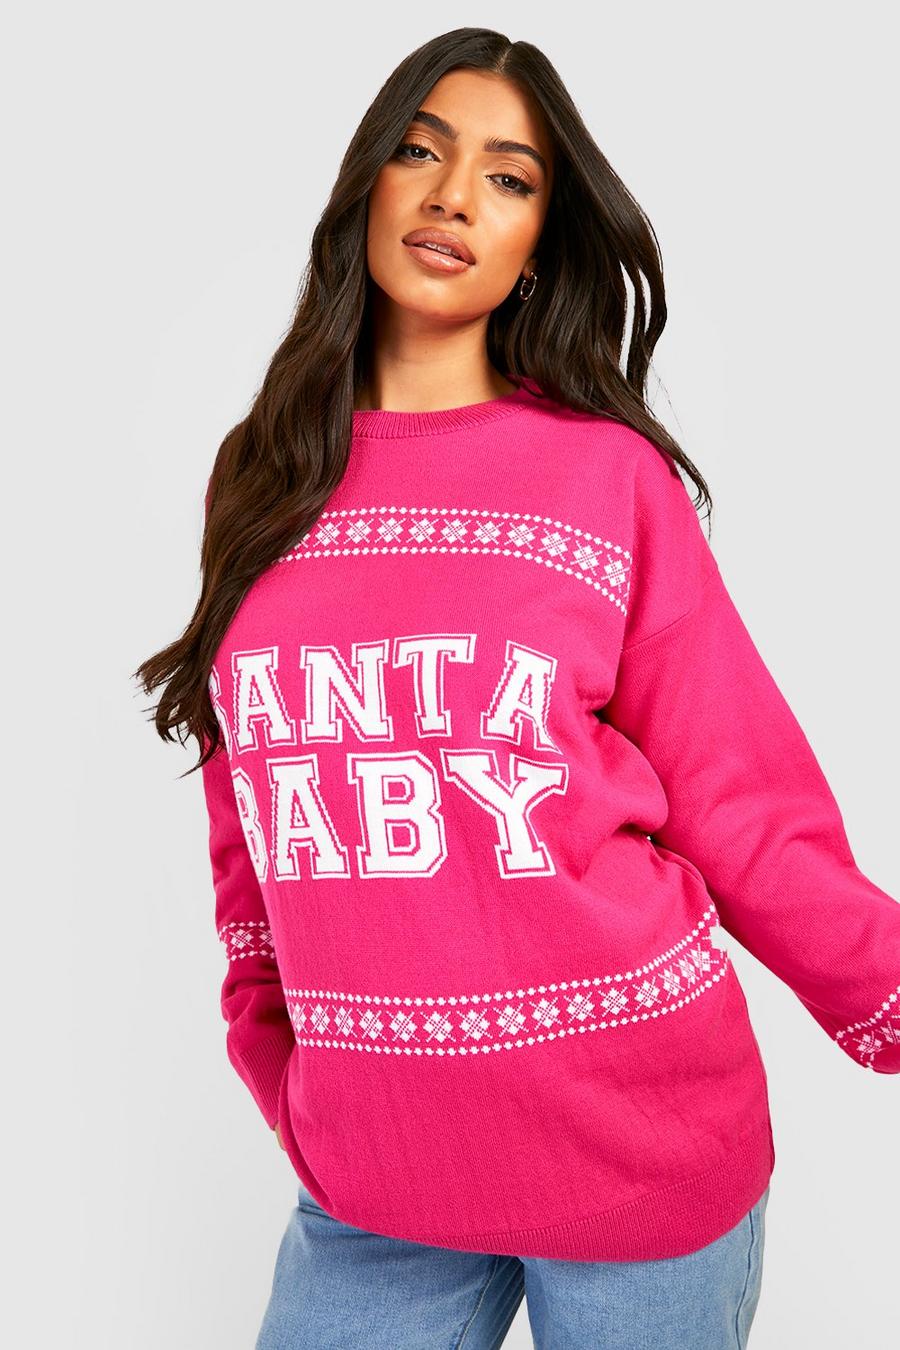 Jersey Premamá navideño con estampado Santa Baby, Pink